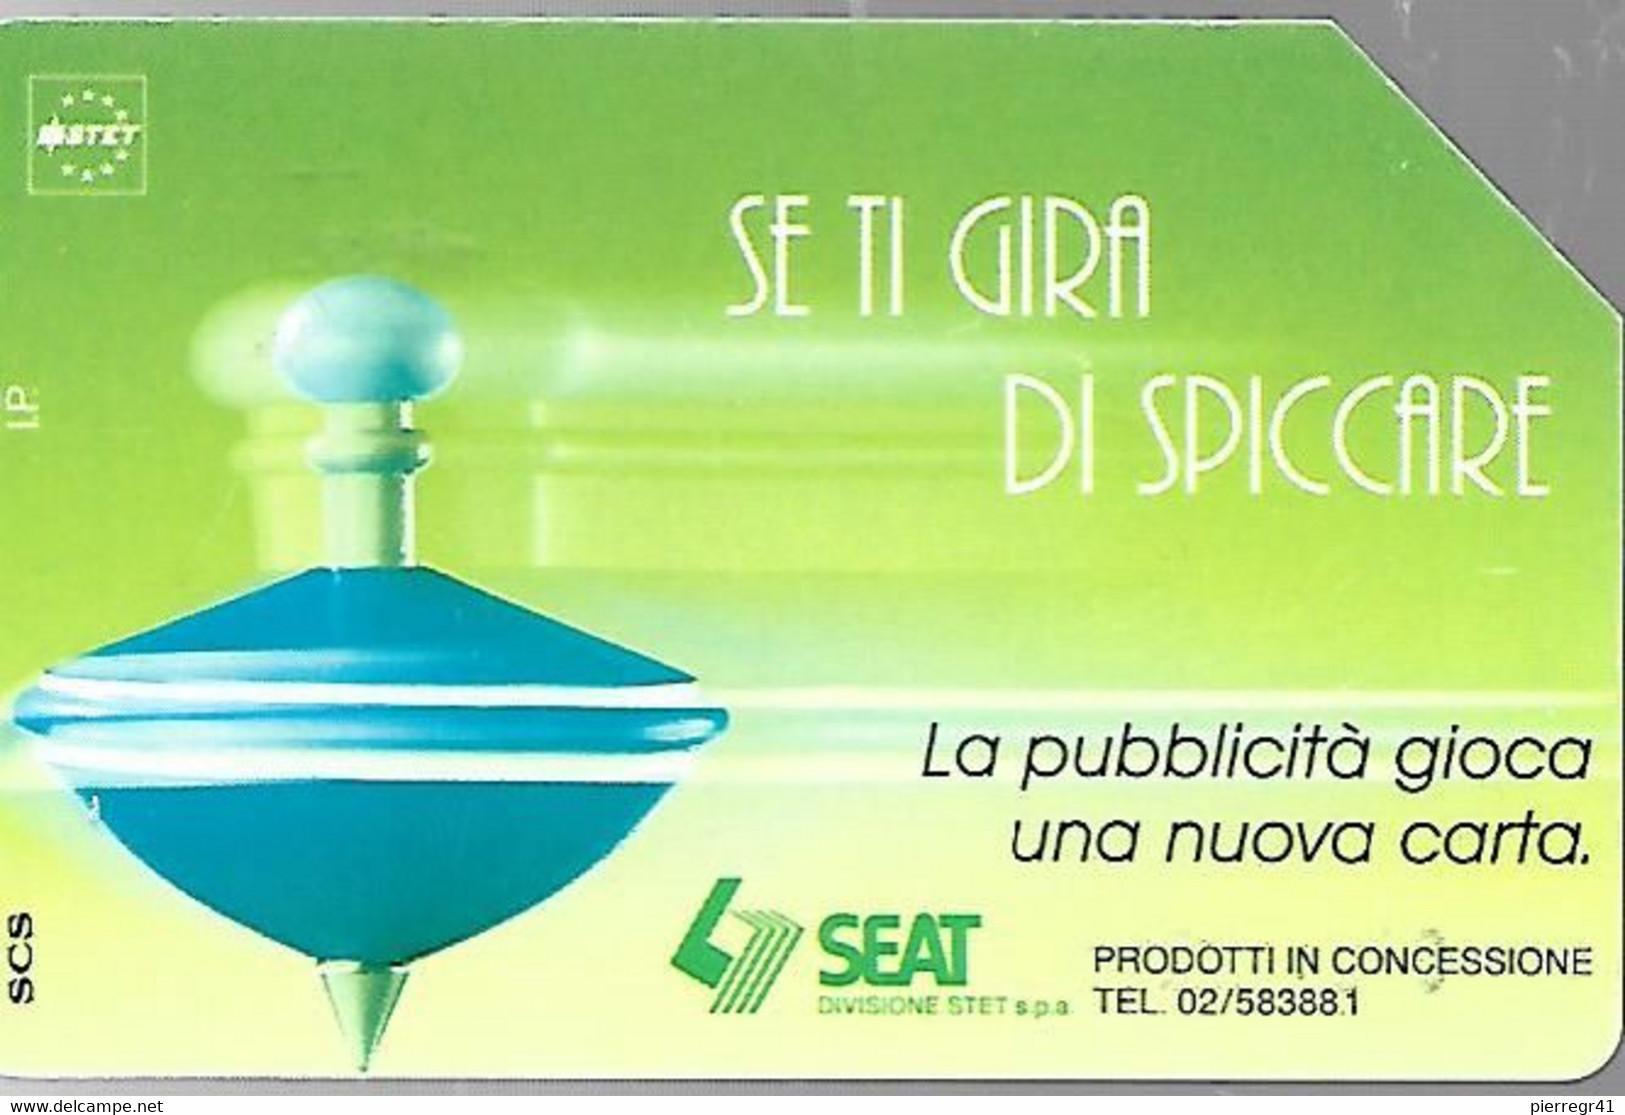 CARTE -ITALIE-Serie Pubblishe Figurate-Trottole-331-Catalogue Golden-5000L/30/06/96-Spiccare Verde -Utilisé-TBE-RARE - Publiques Précurseurs